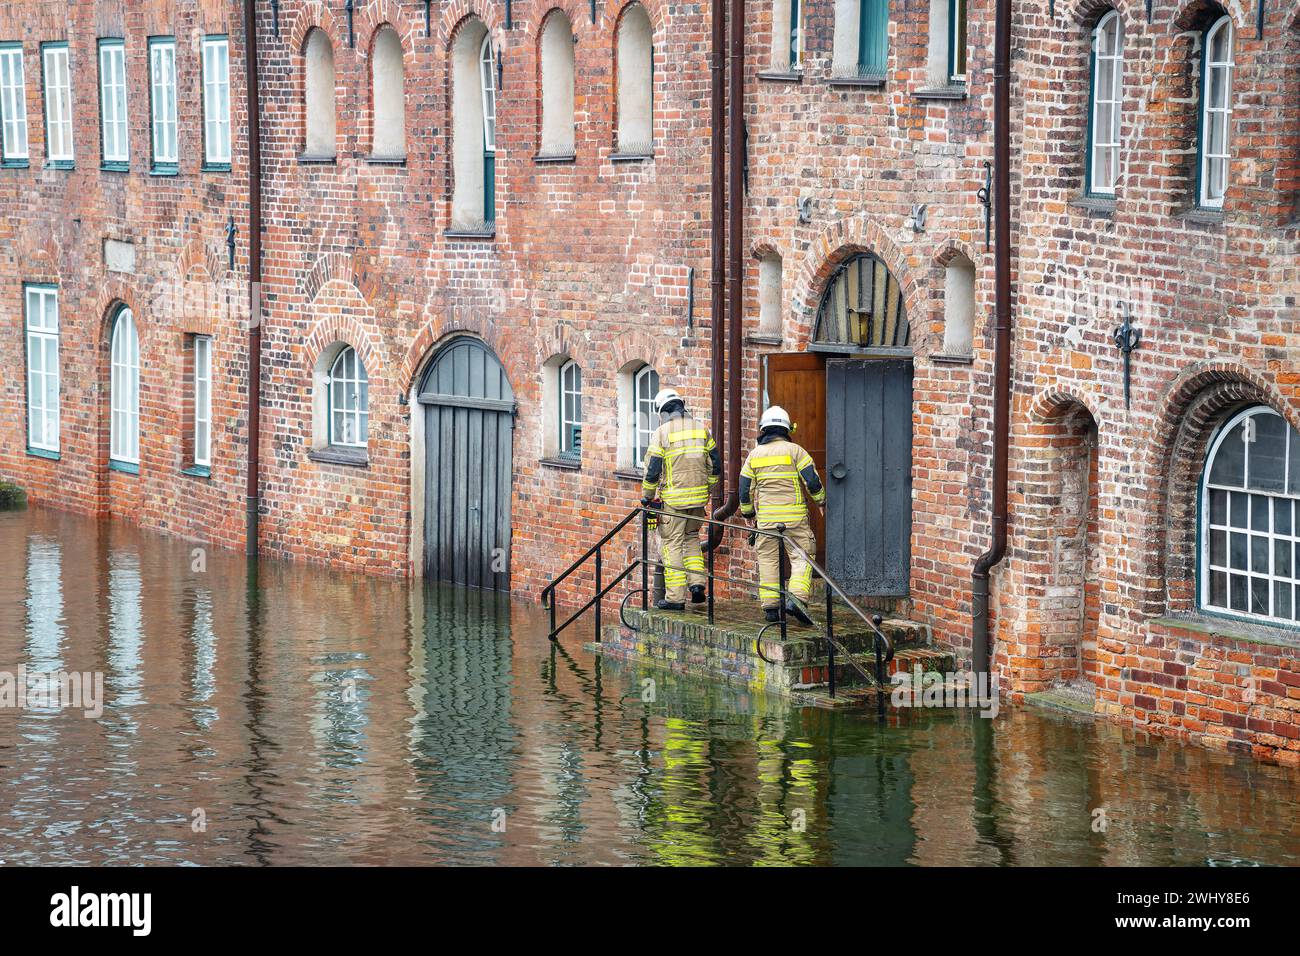 Hochwasser überschwemmt die Lübecker Altstadt als die Trave ihr Ufer überquert, kontrollieren Spezialisten den Wasserstand und die Gefahr Stockfoto